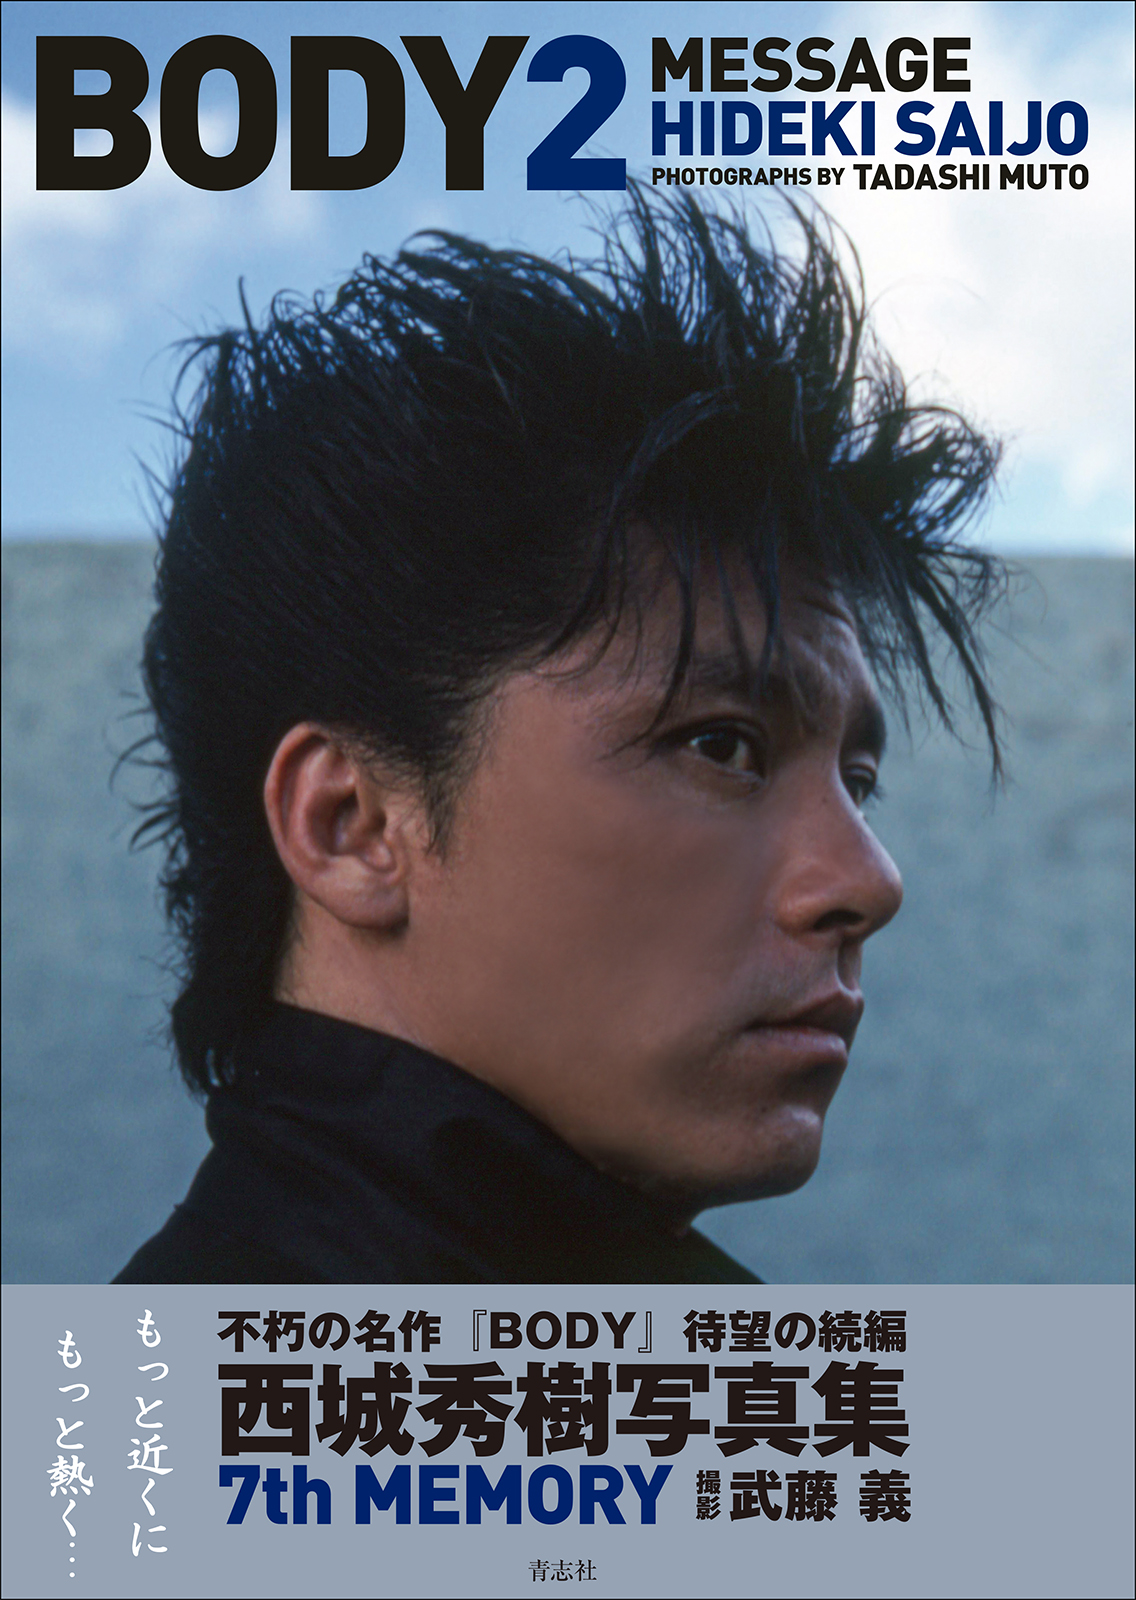 西城秀樹写真集『BODY2』6月19日発売決定！ - 西城秀樹オフィシャルサイト